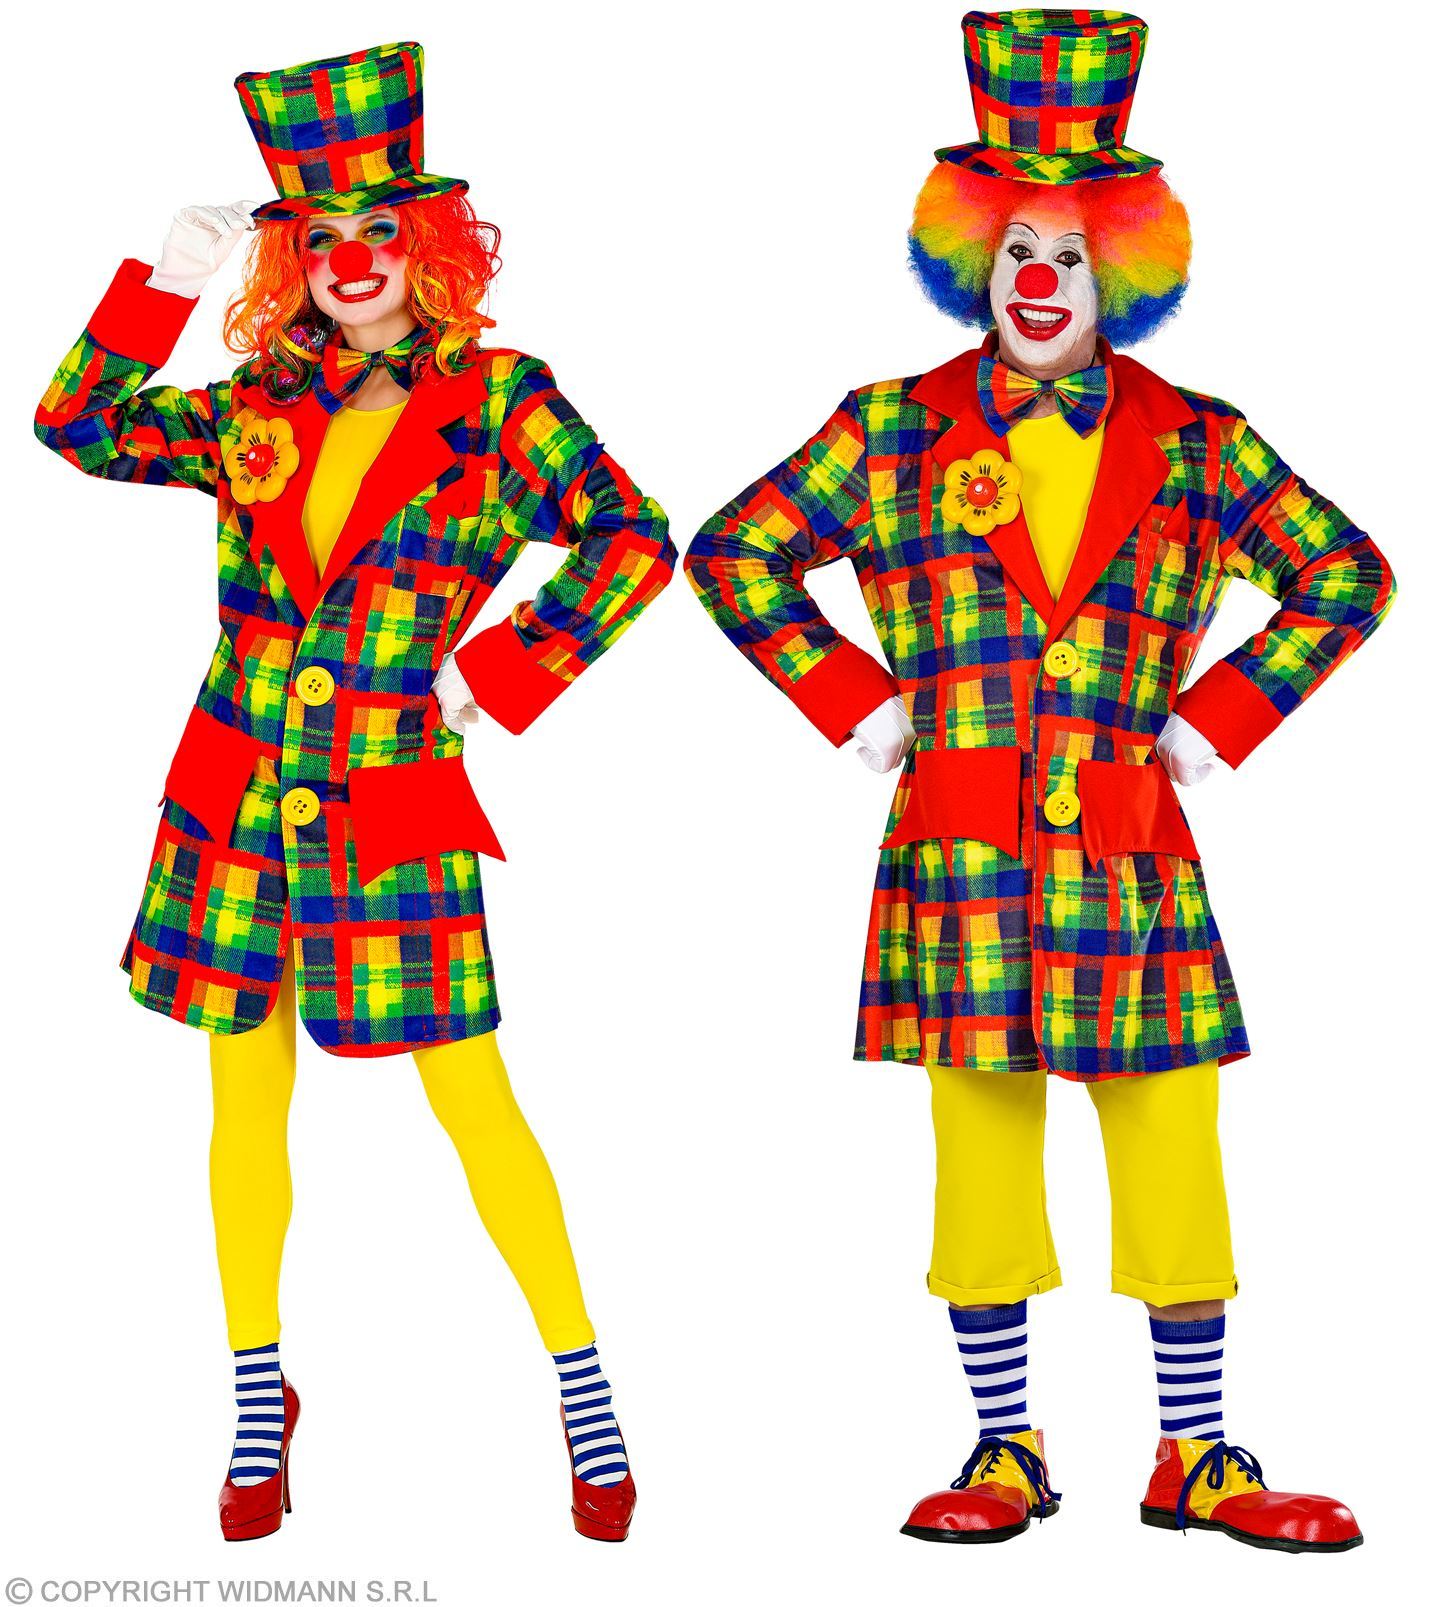 Clownsjas voor volwassen met vrolijke kleuren